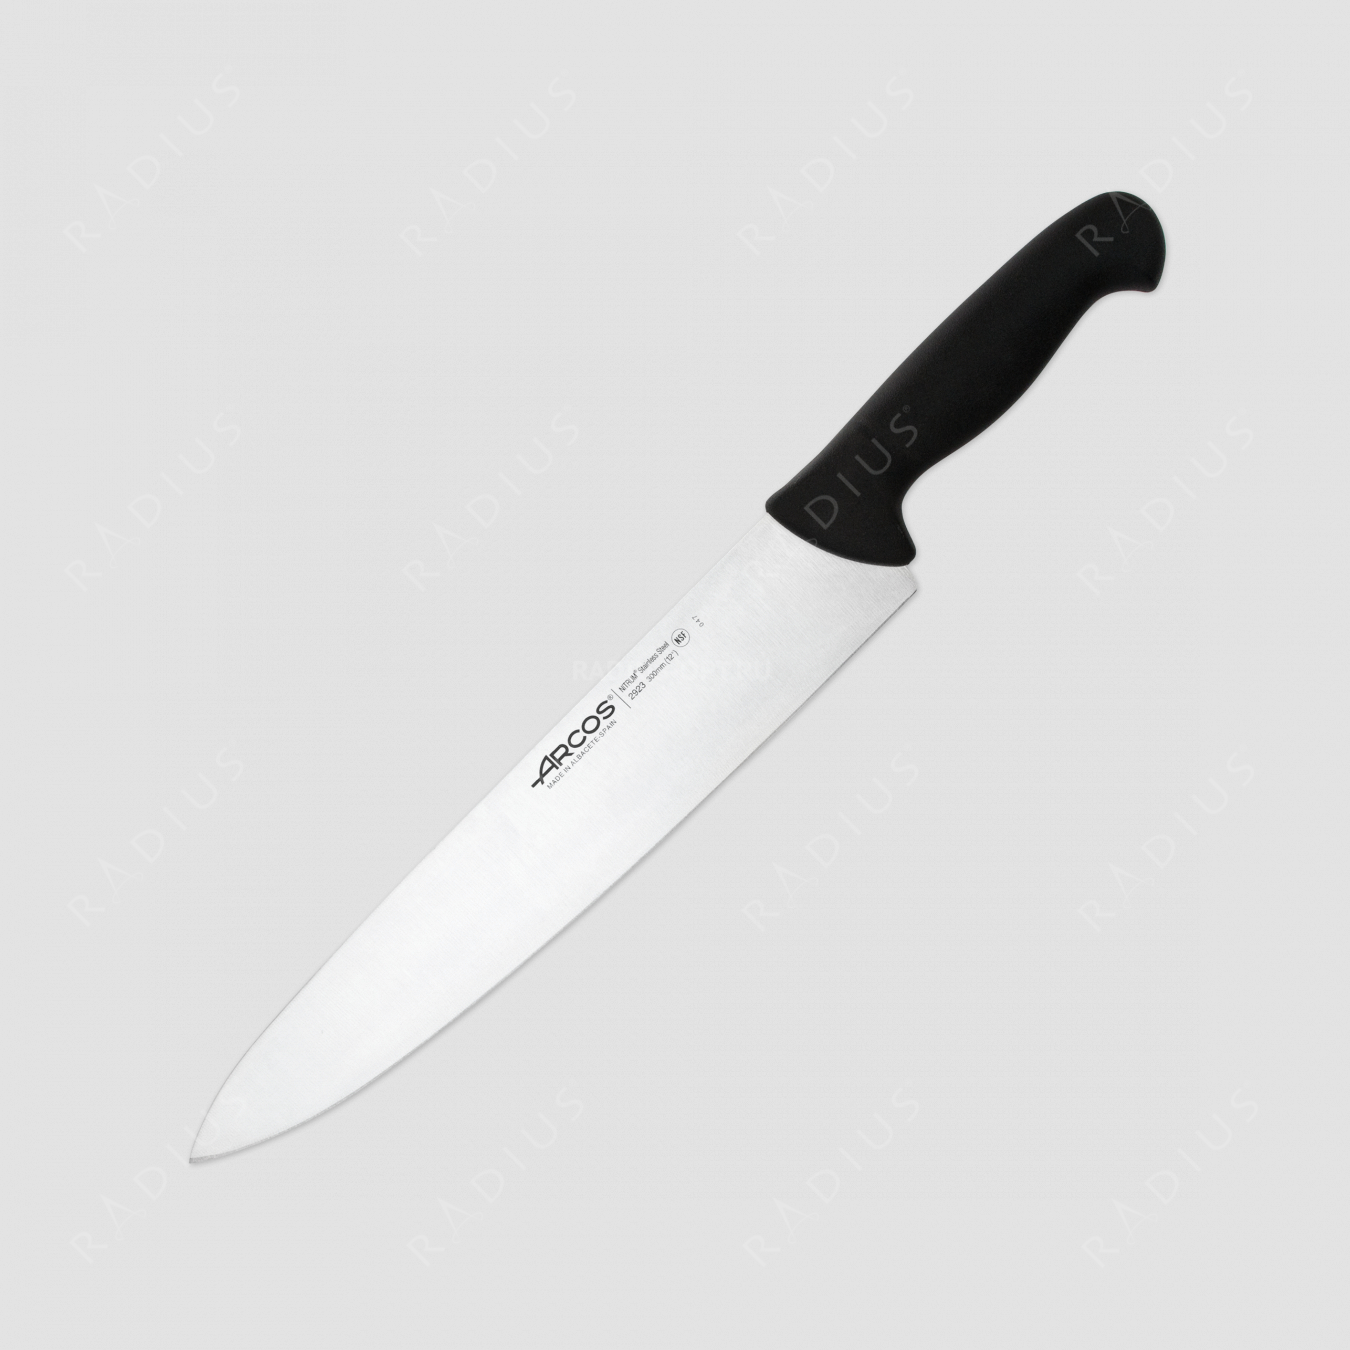 Нож кухонный поварской 30 см, рукоять - черная, серия 2900, ARCOS, Испания